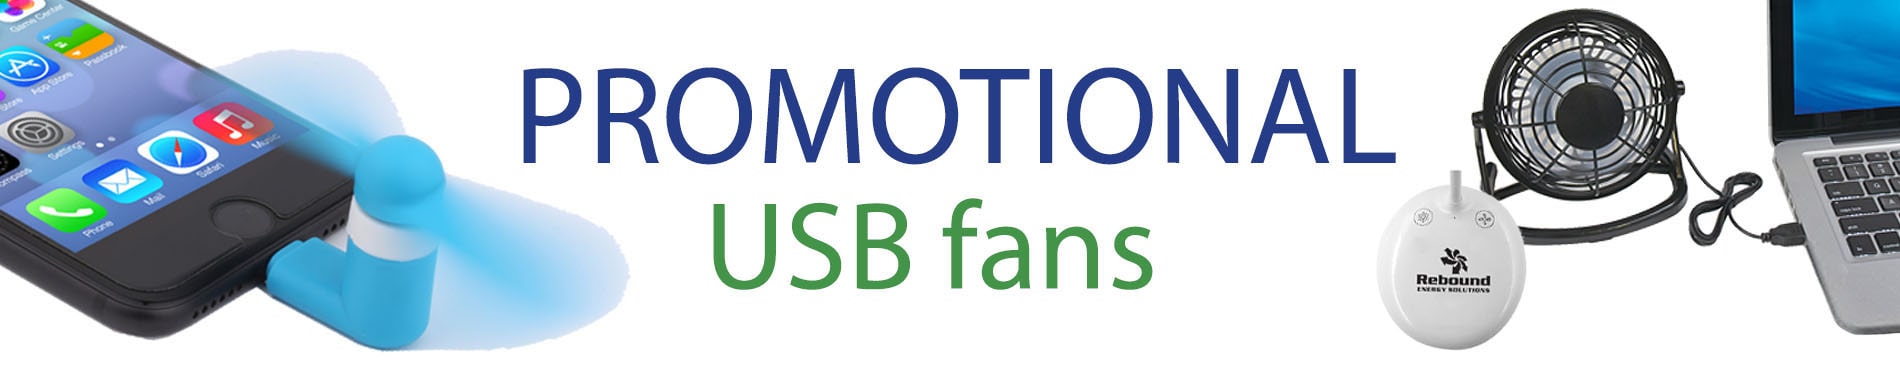 promotional USB fan